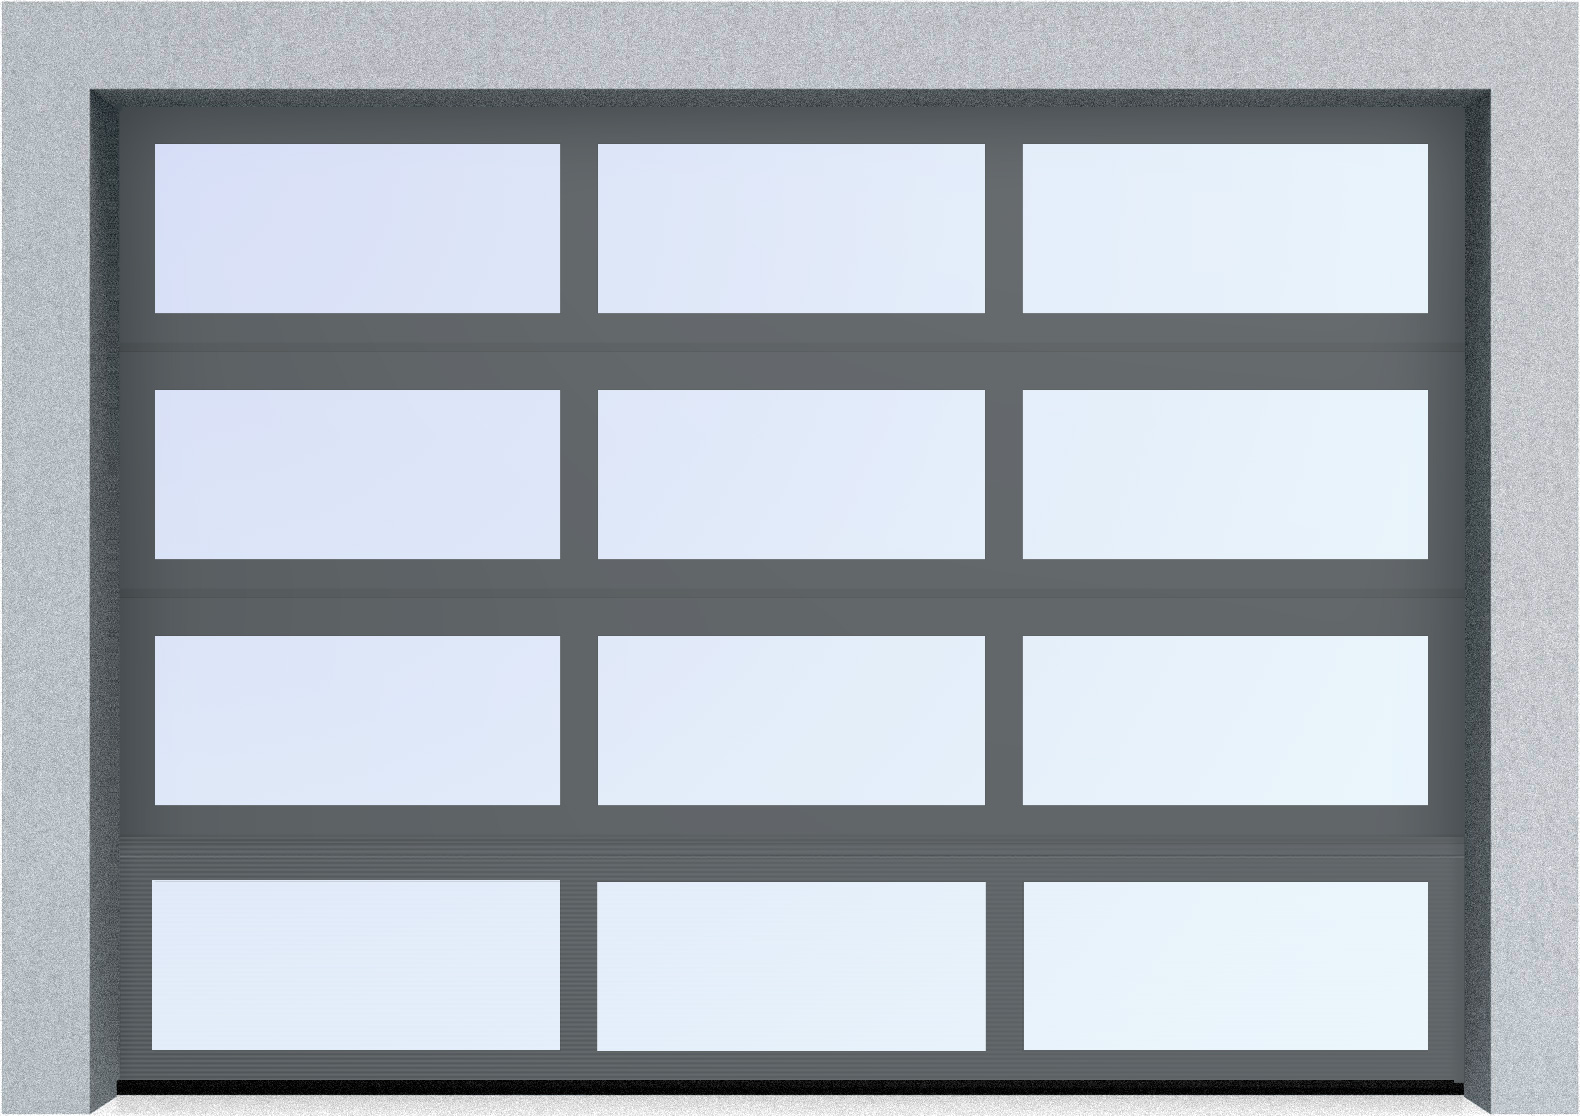  Секционные панорамные ворота серии AluTrend (АЛП) 2500х2500 нижняя панель стандартные цвета, фото 5 